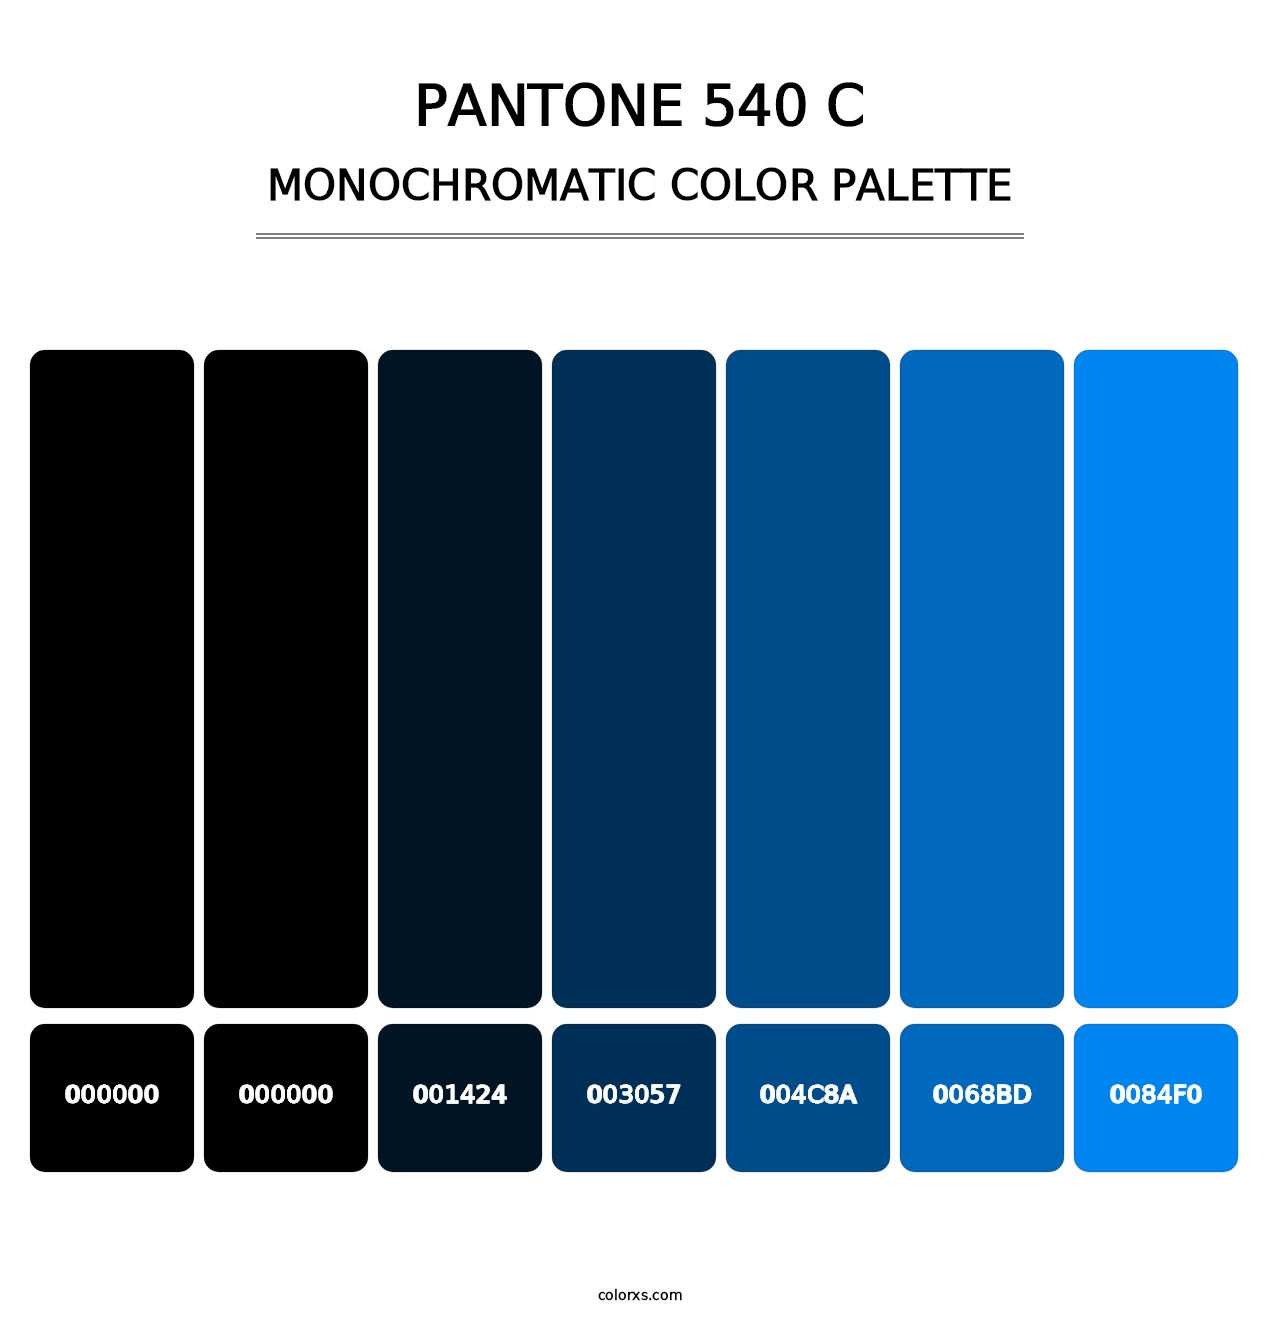 PANTONE 540 C - Monochromatic Color Palette